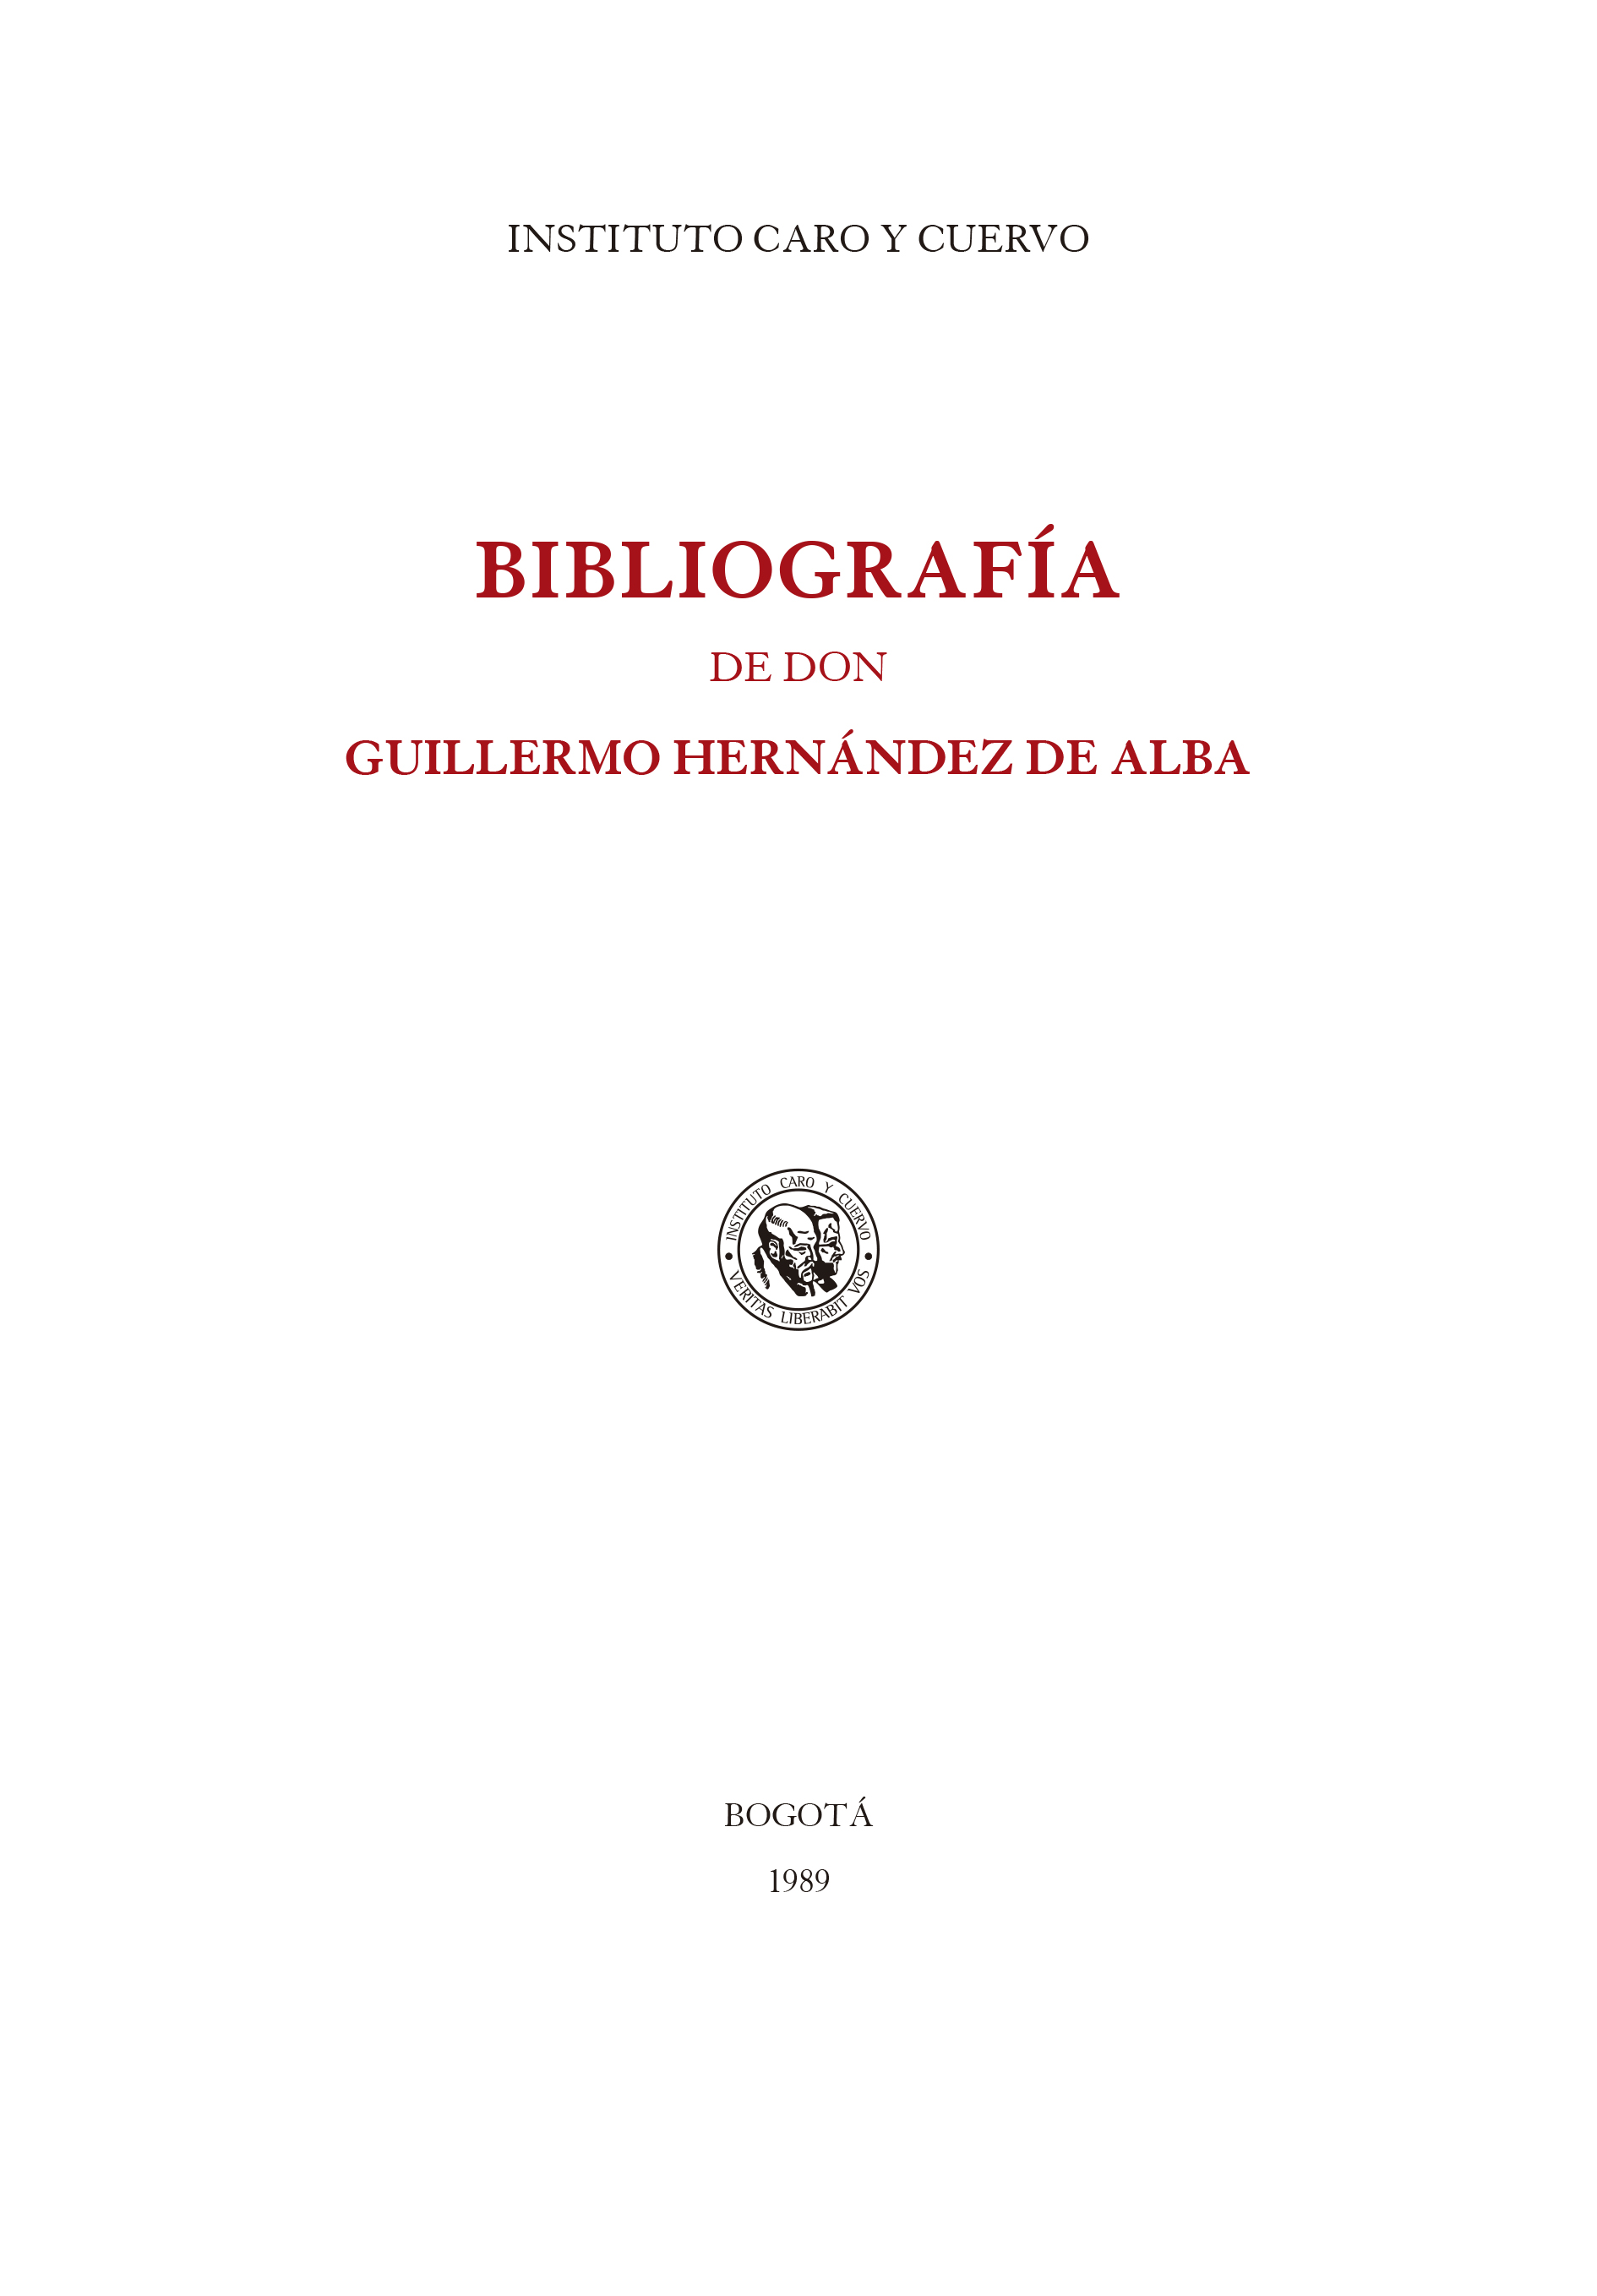 Bibliografía de Guillermo Hernández de Alba